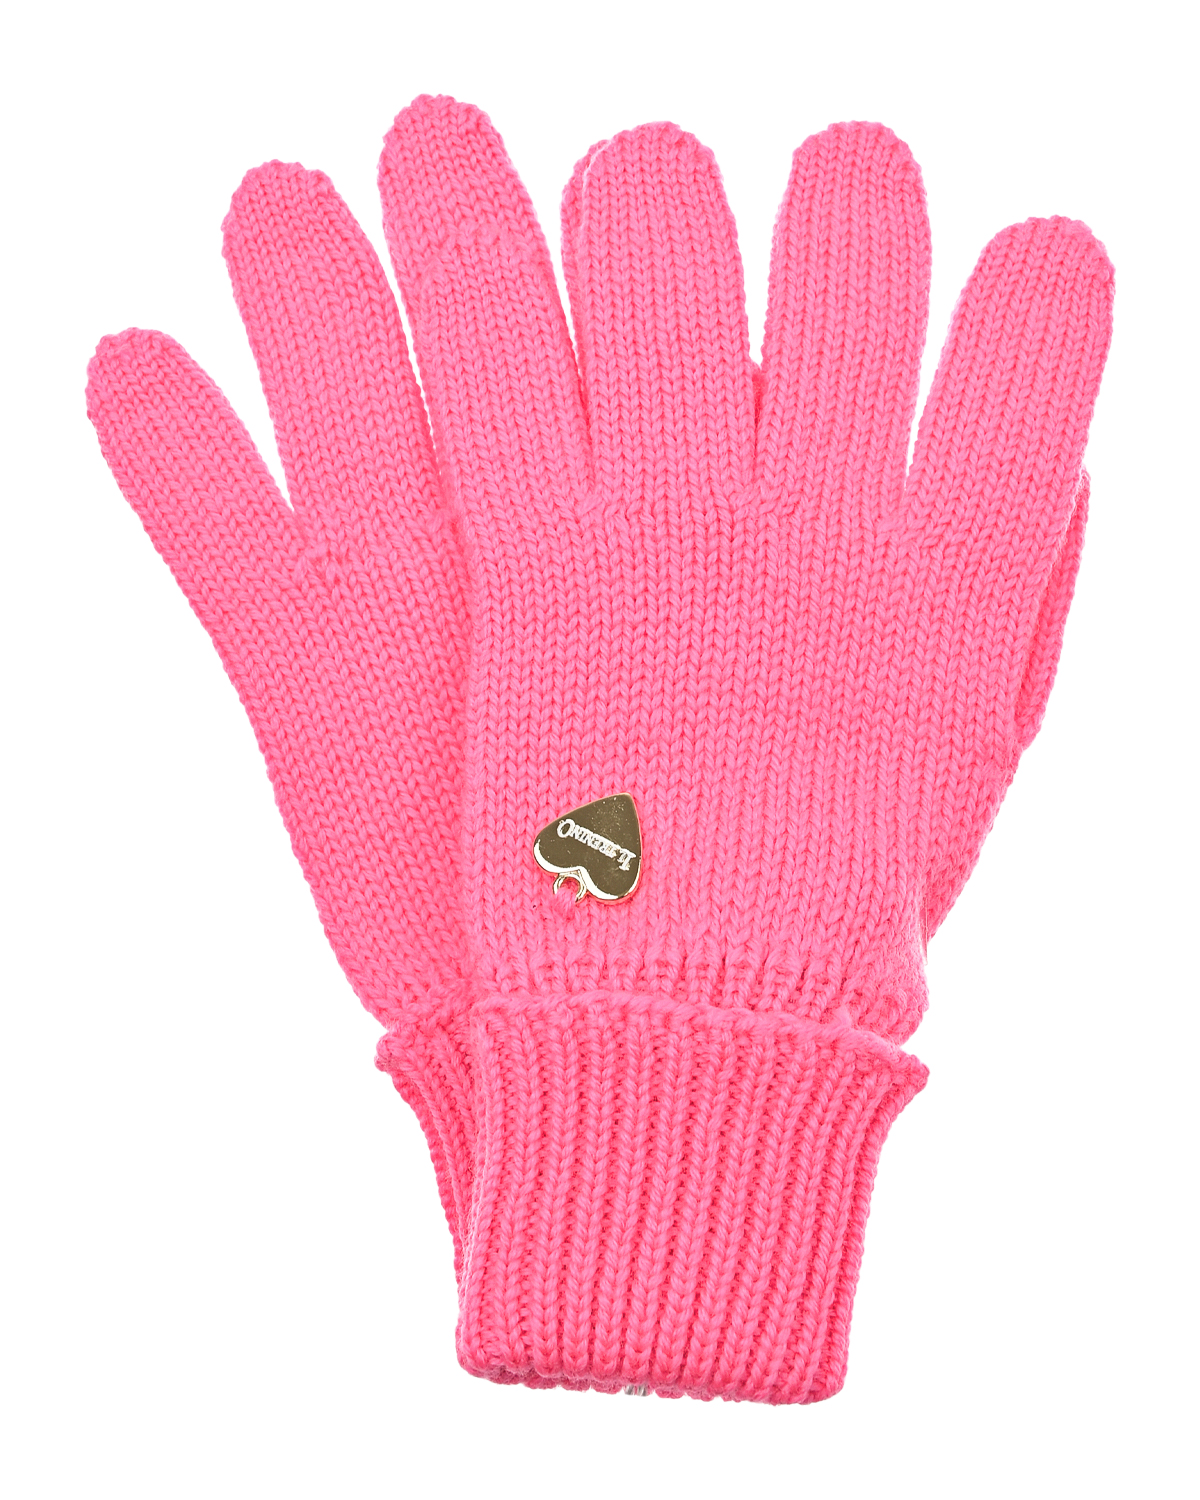 Купить розовые перчатки. Розовые перчатки. Перчатки для девочек розовые.